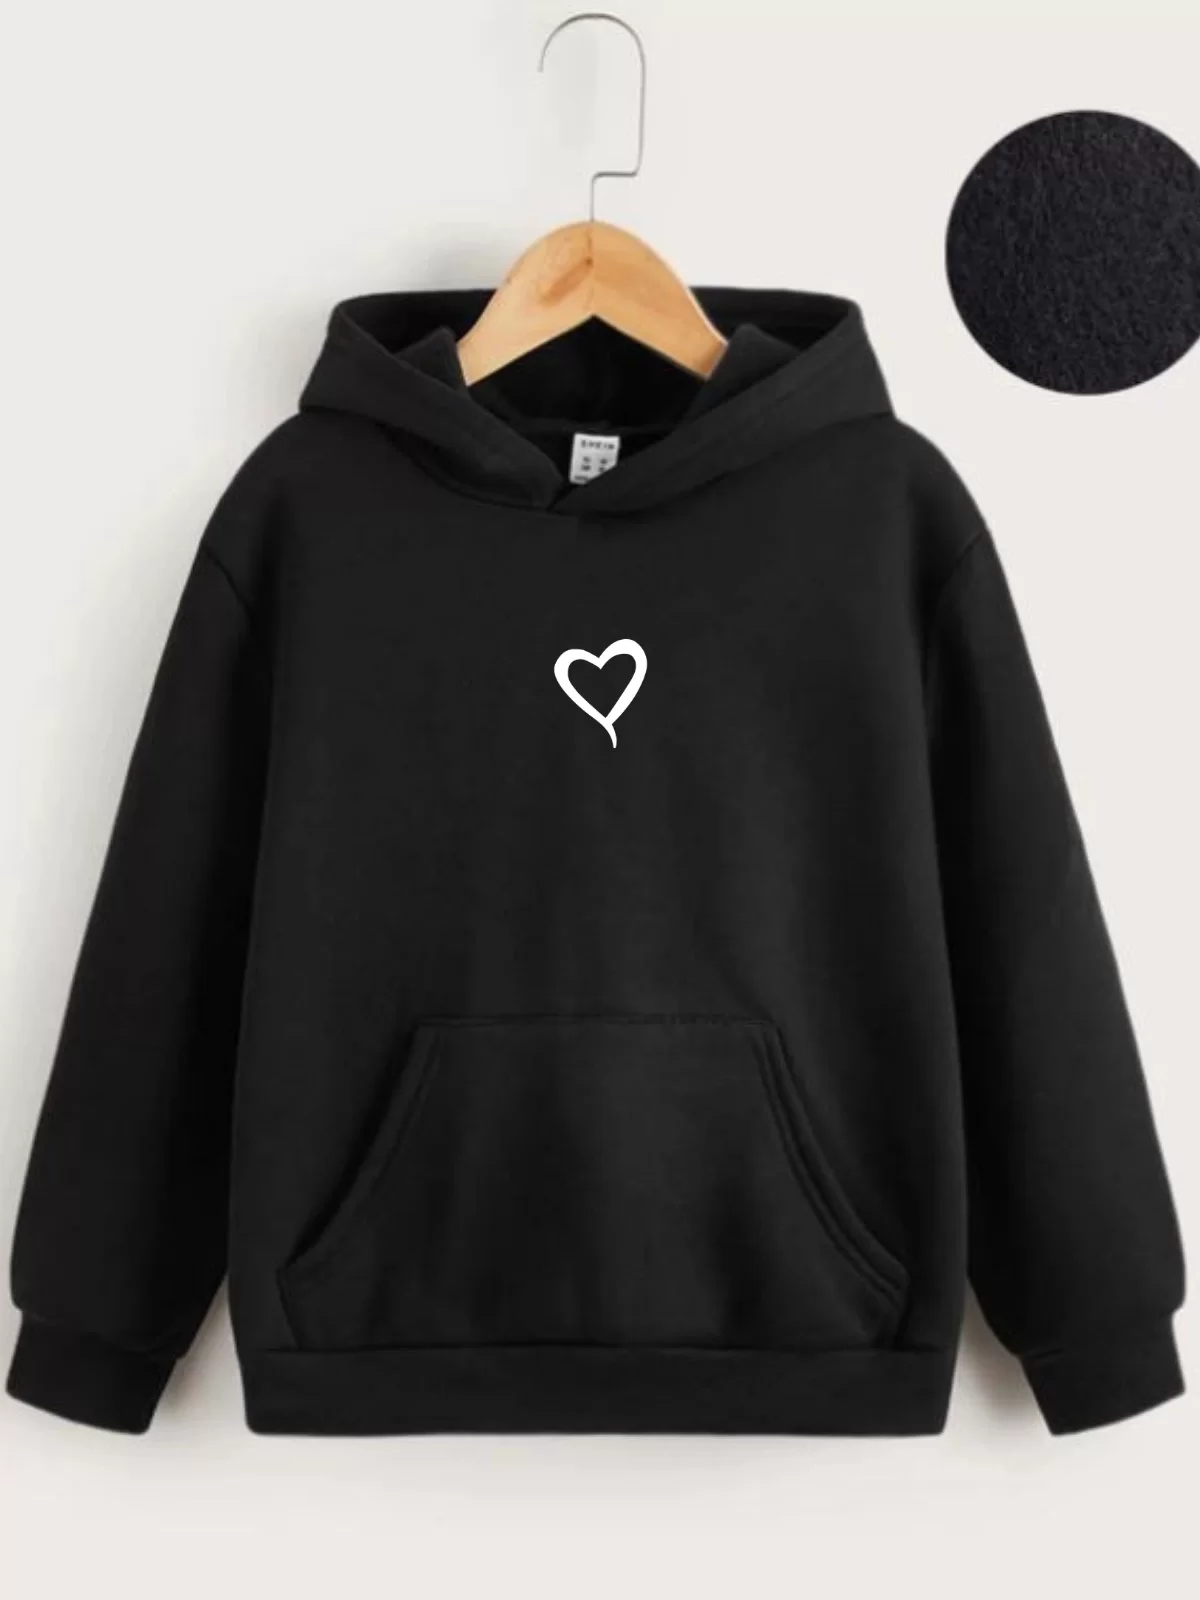 Çocuk Unisex Kapüşonlu Kalp Baskılı Sweatshirt - Siyah